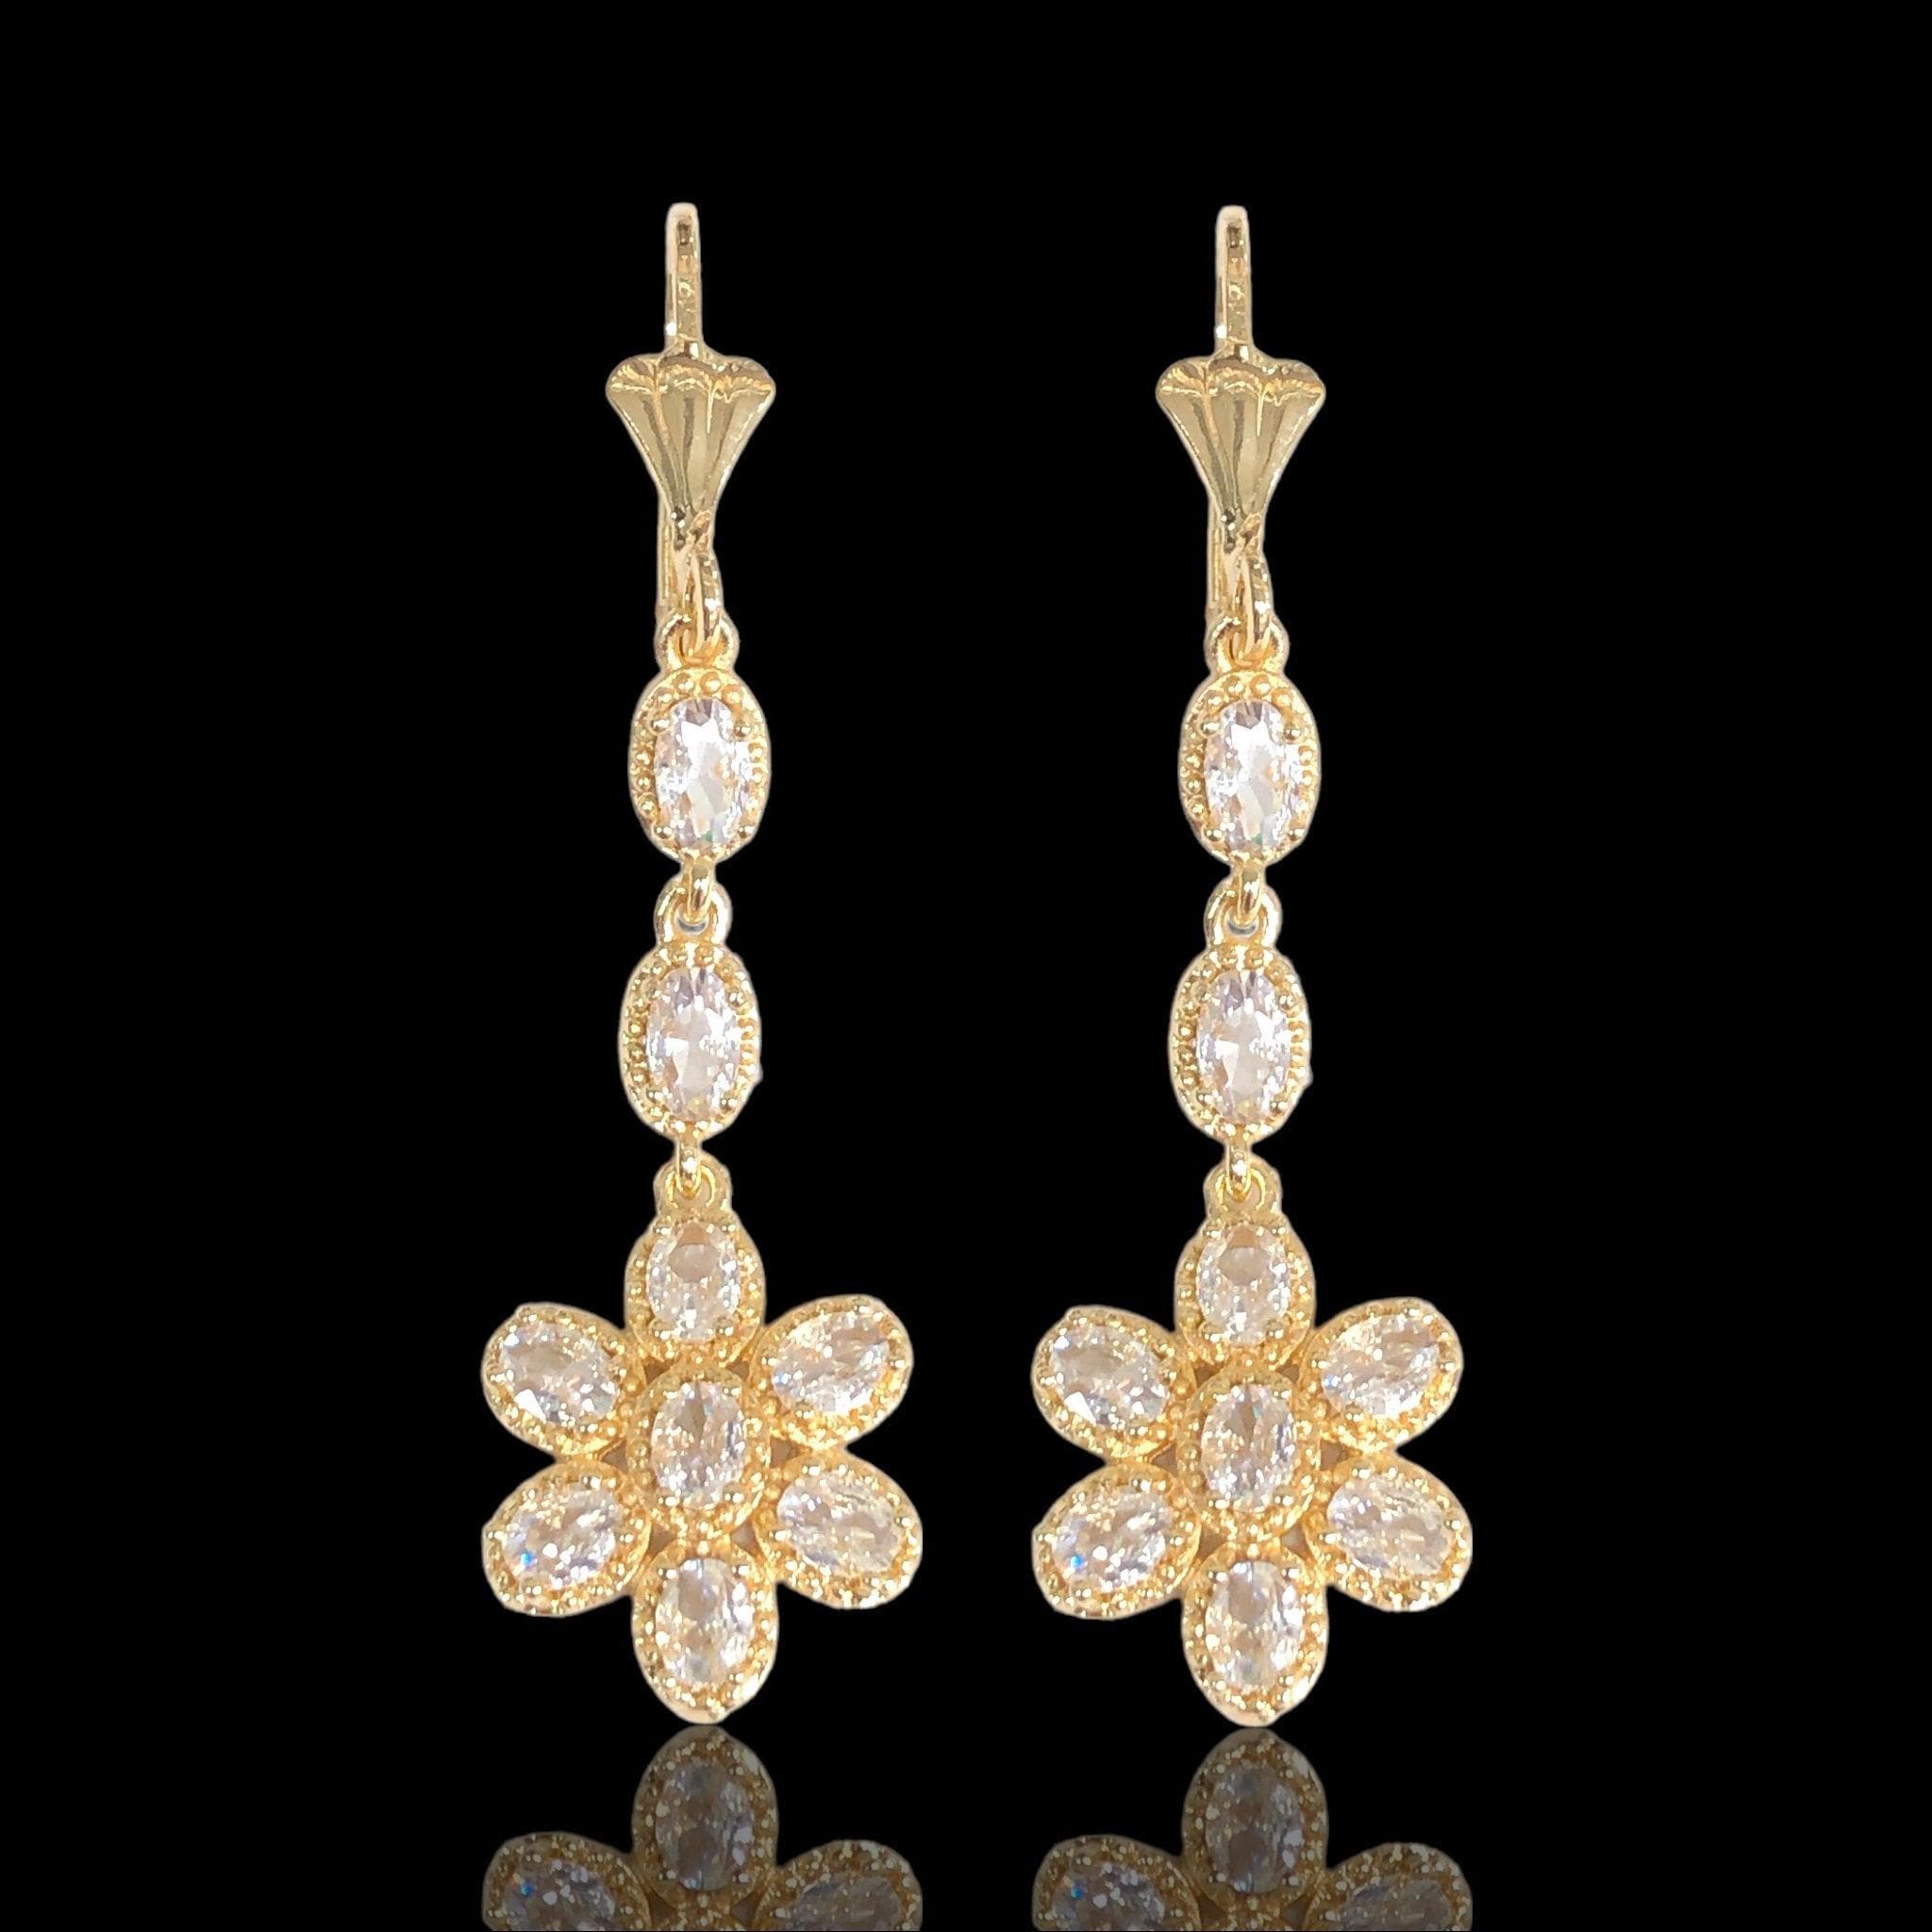 OLE 0634 18K Gold Filled Sun Flower CZ Dangle Earrings- KUANIA ORO LAMINADO